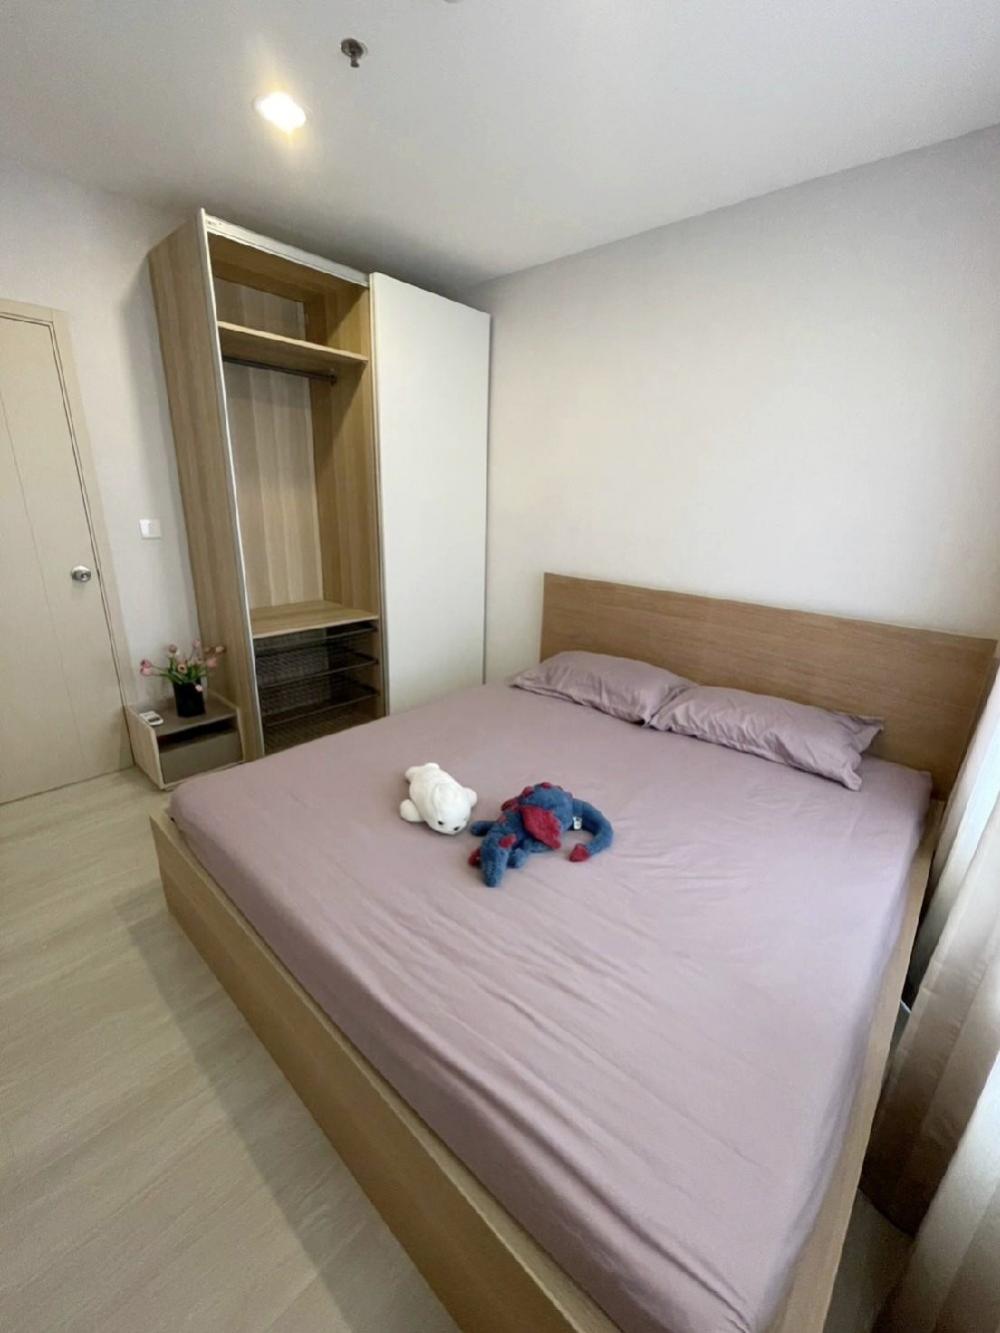 ให้เช่าคอนโดปิ่นเกล้า จรัญสนิทวงศ์ : Life Pinklao Condo for rent : 1 bedroom for 30 sqm. on 7th floor.with fully furnished and electrical appliances.Next to MRT Bangyikhan. Rental only for 13,000 / m.